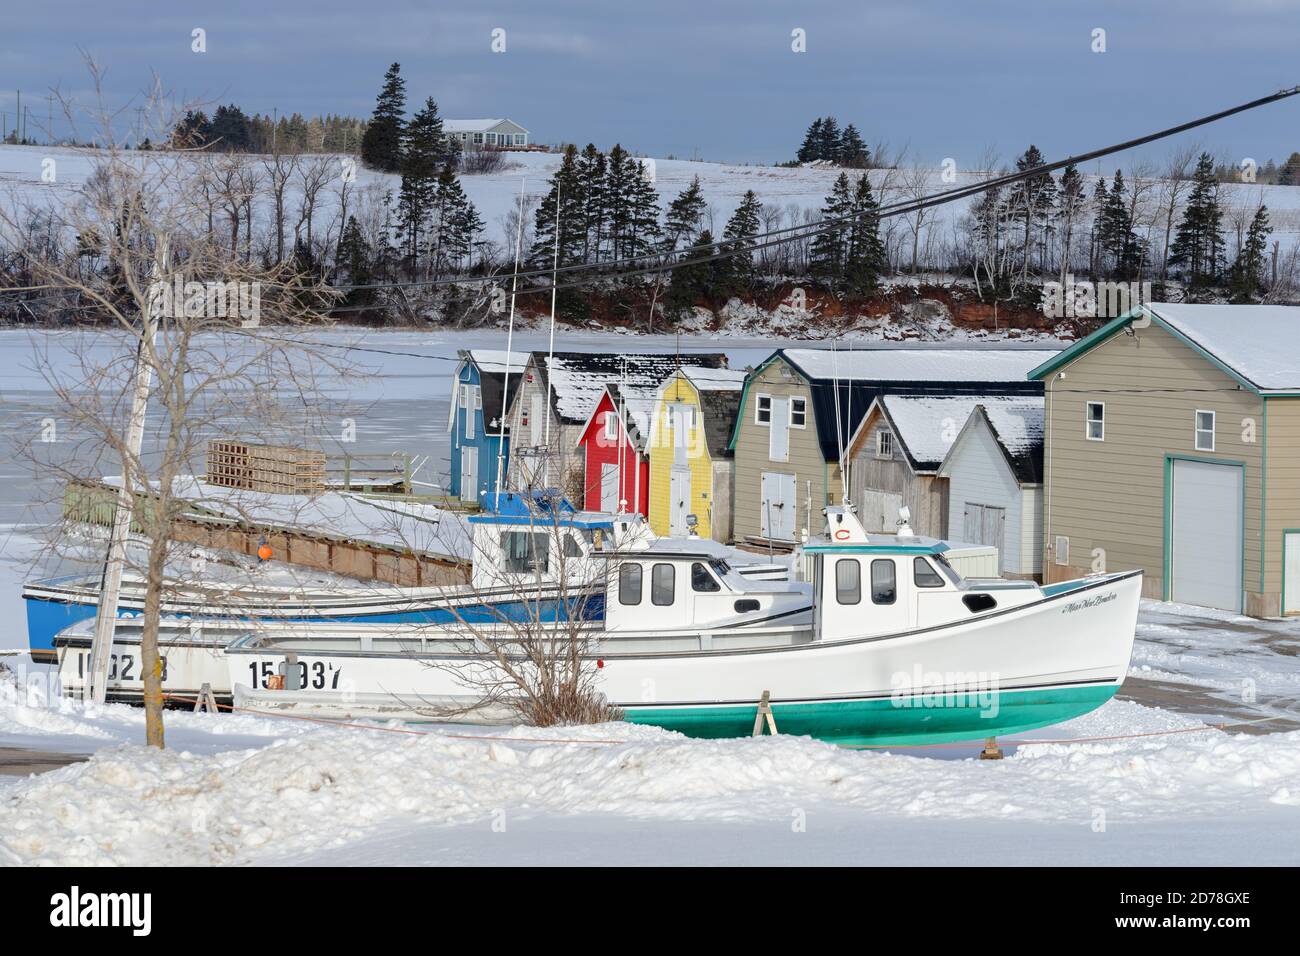 Des bateaux de pêche ont été retirés de l'eau pour l'hiver dans les régions rurales de l'Île-du-Prince-Édouard, au Canada. Banque D'Images